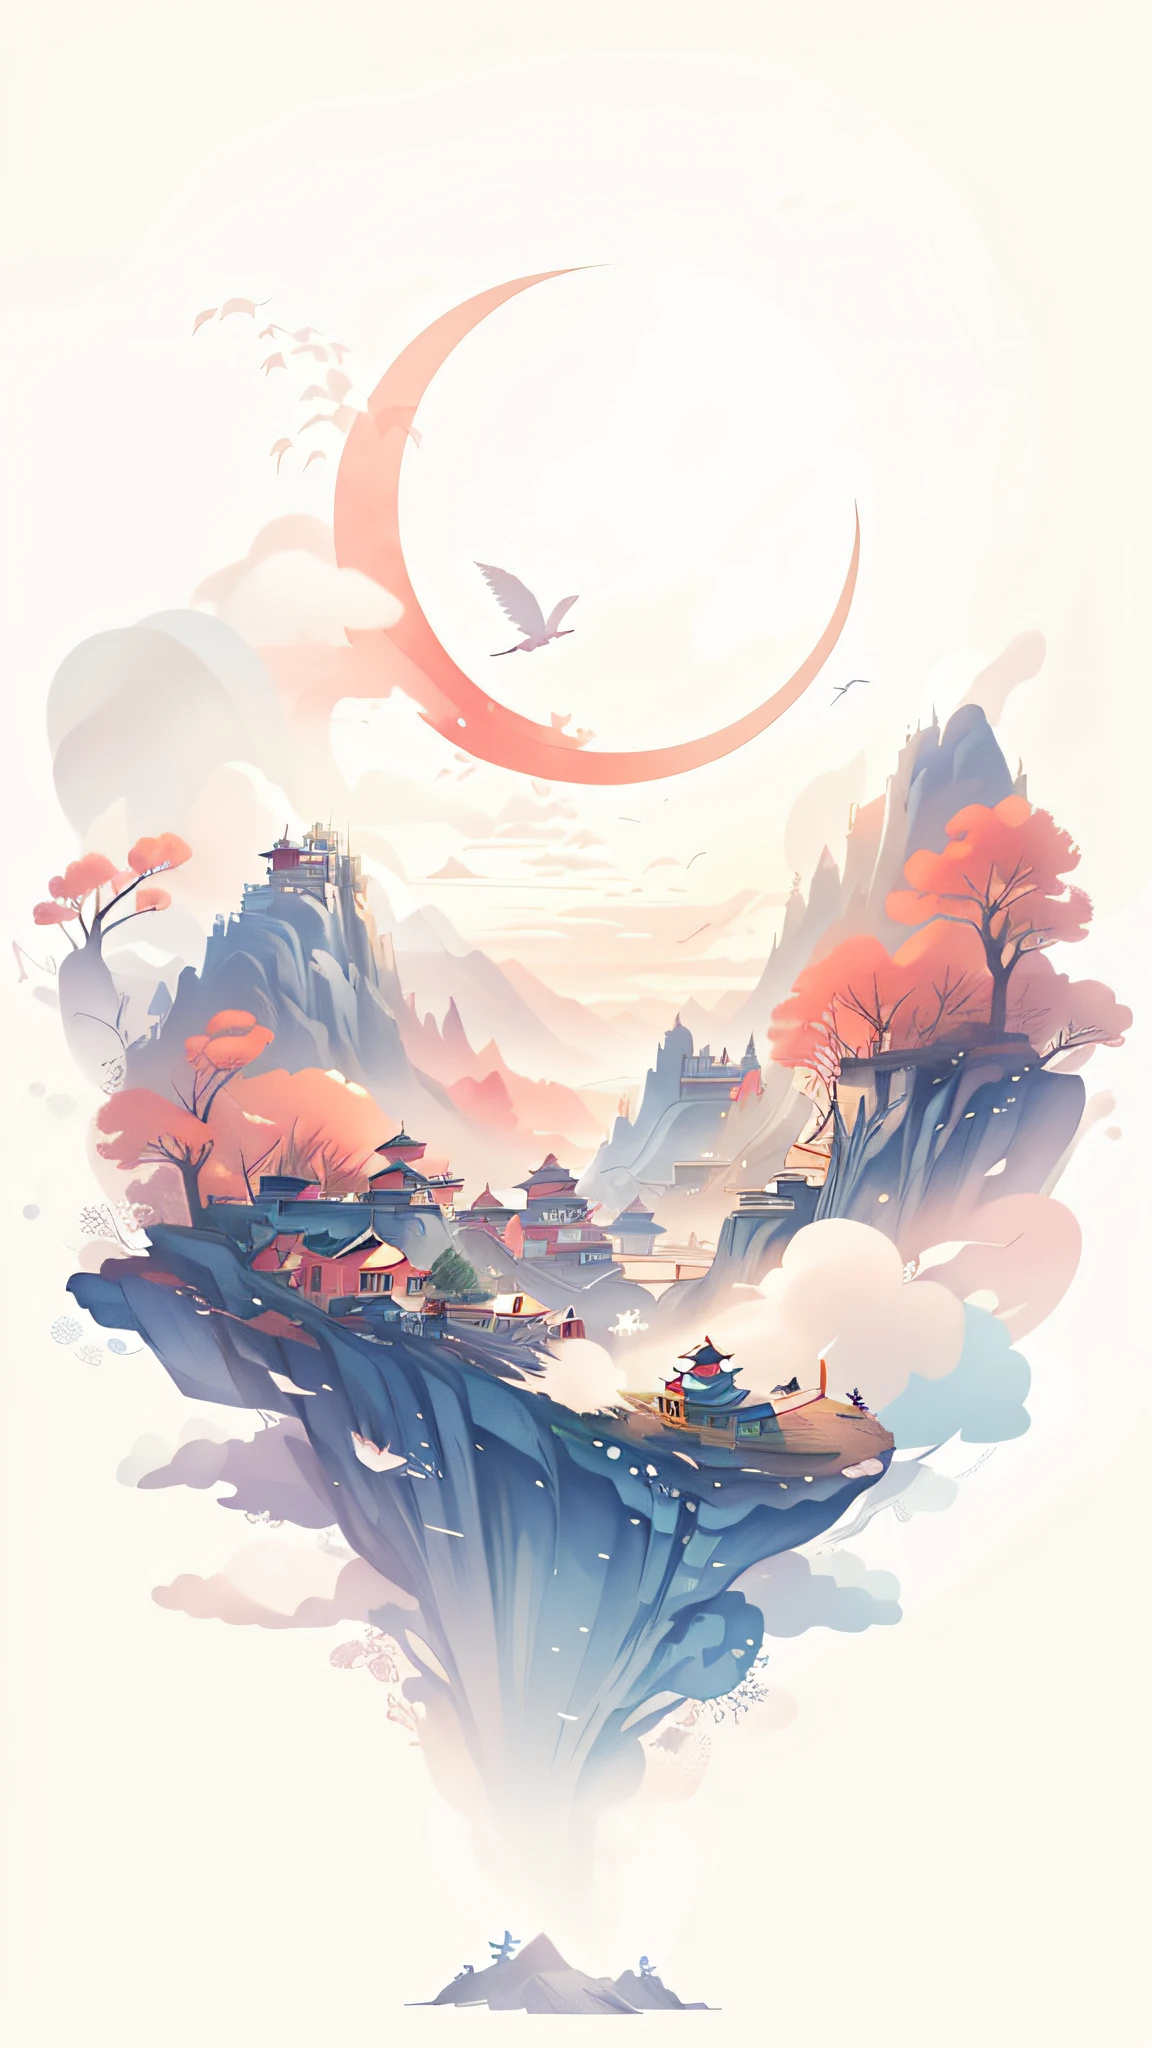 Wunderschöne Kunstillustration im chinesischen Aquarellstil，Fantastische Landschaftskunstwerke，Zeigt Vögel, die über den Full Moon Mountain fliegen，Mit Ruhe、Dunstige und verträumte Atmosphäre，Bietet 8K-Details und künstlerische Qualität，Präsentieren Sie den chinesischen Kunststil，Eine verträumte Landschaft, die Hintergrundkunst und Anime-Hintergrundkunst kombiniert，Es vermittelt ein sehr kohärentes Gefühl，Es ist wie ein Onmyoji-stilisiertes Kunstwerk。